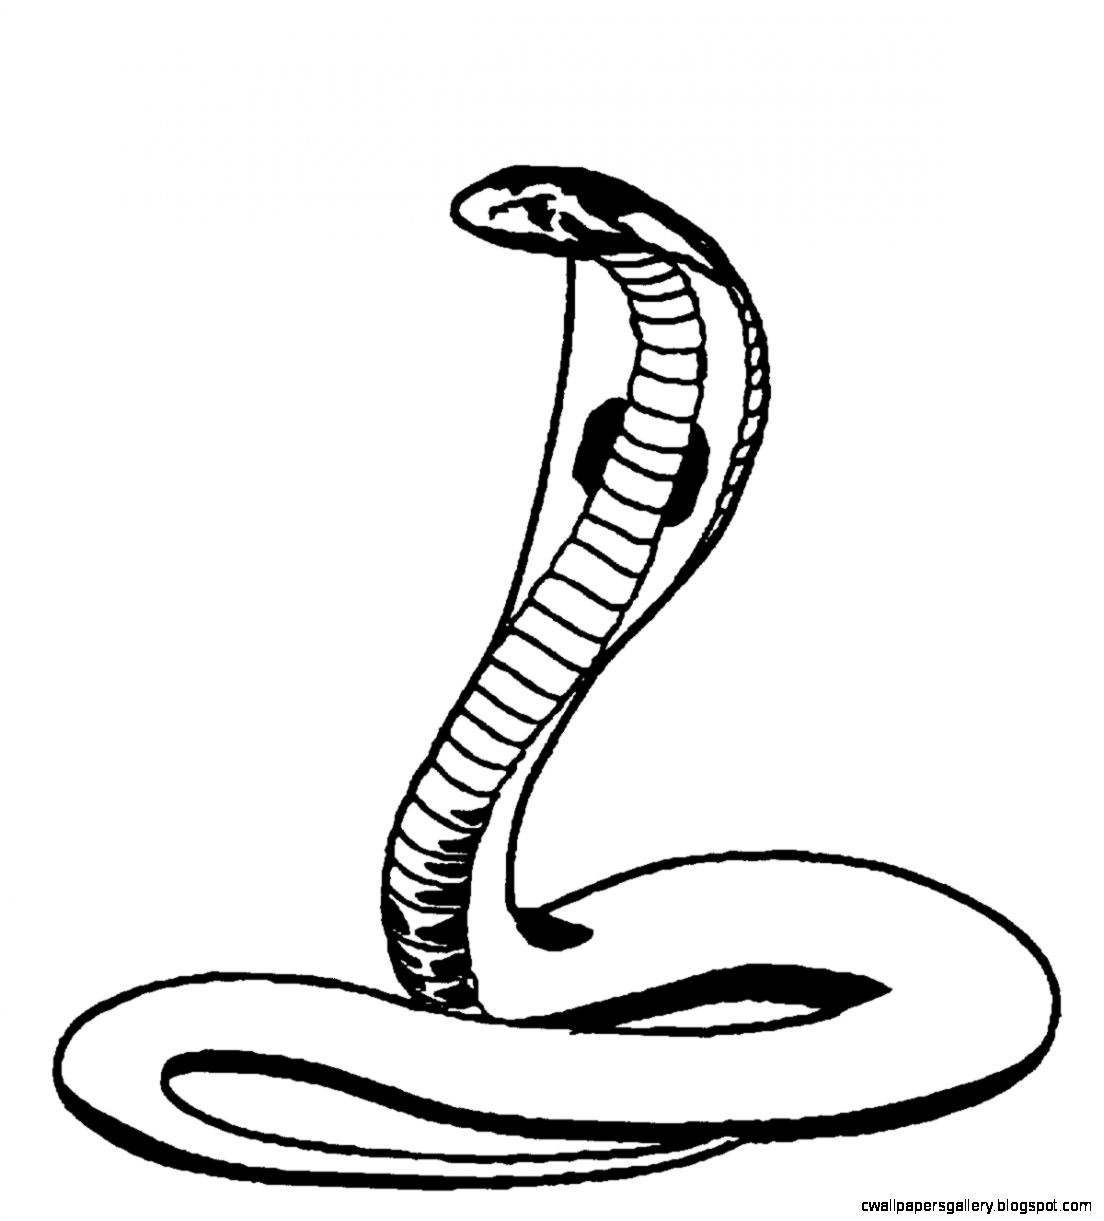 Cobra Drawing at GetDrawings | Free download